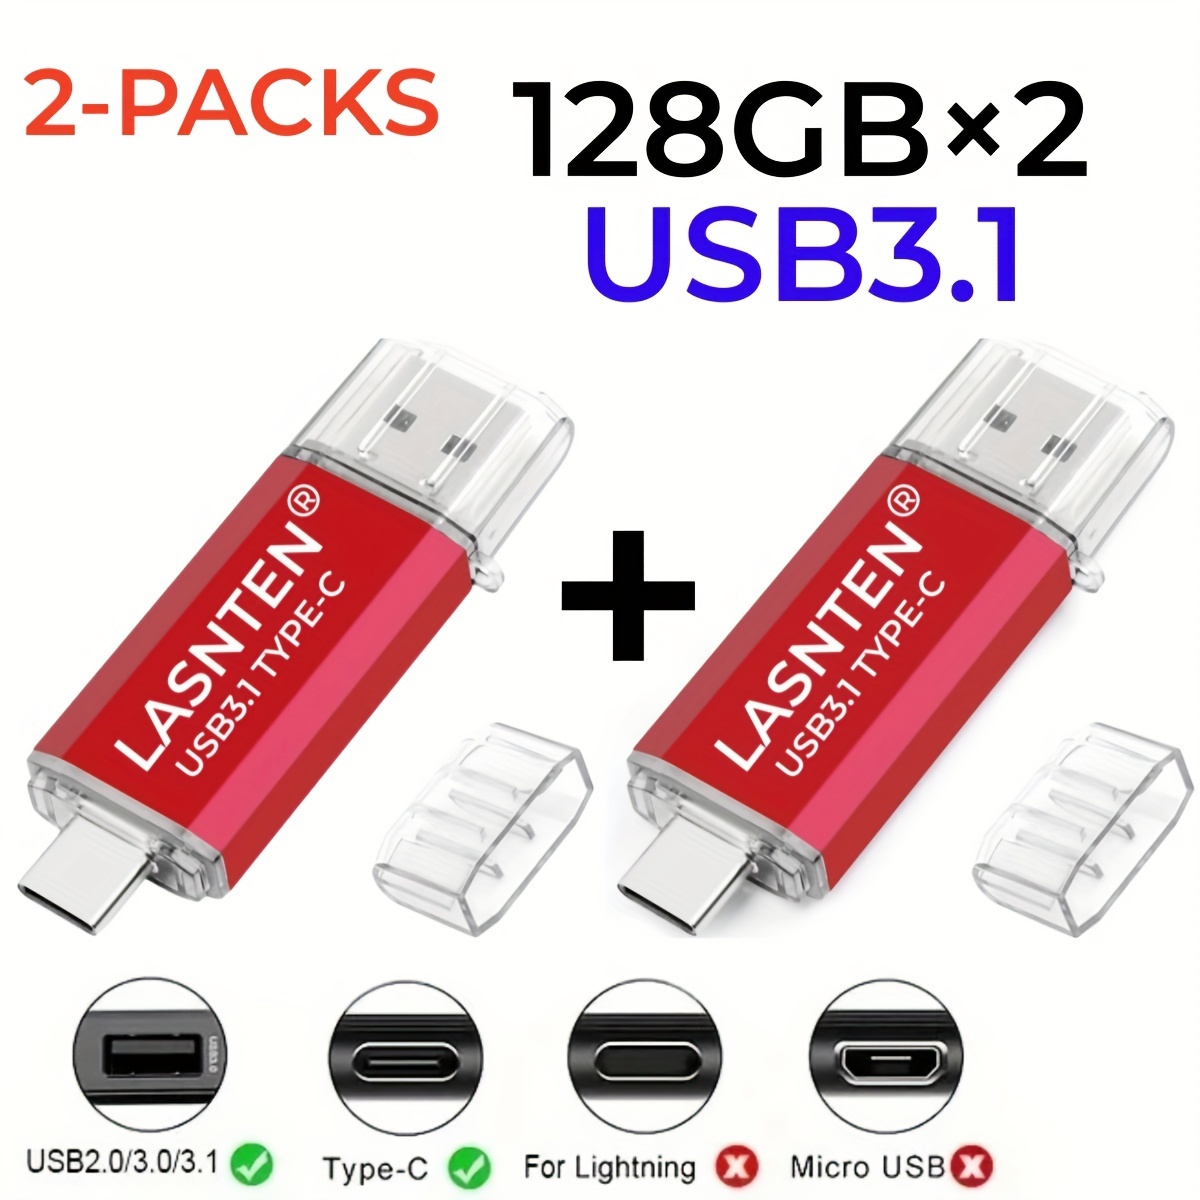 Usb C Flash Drive 256gb 128gb usb 3.0 1 Dual Drive Type C - Temu